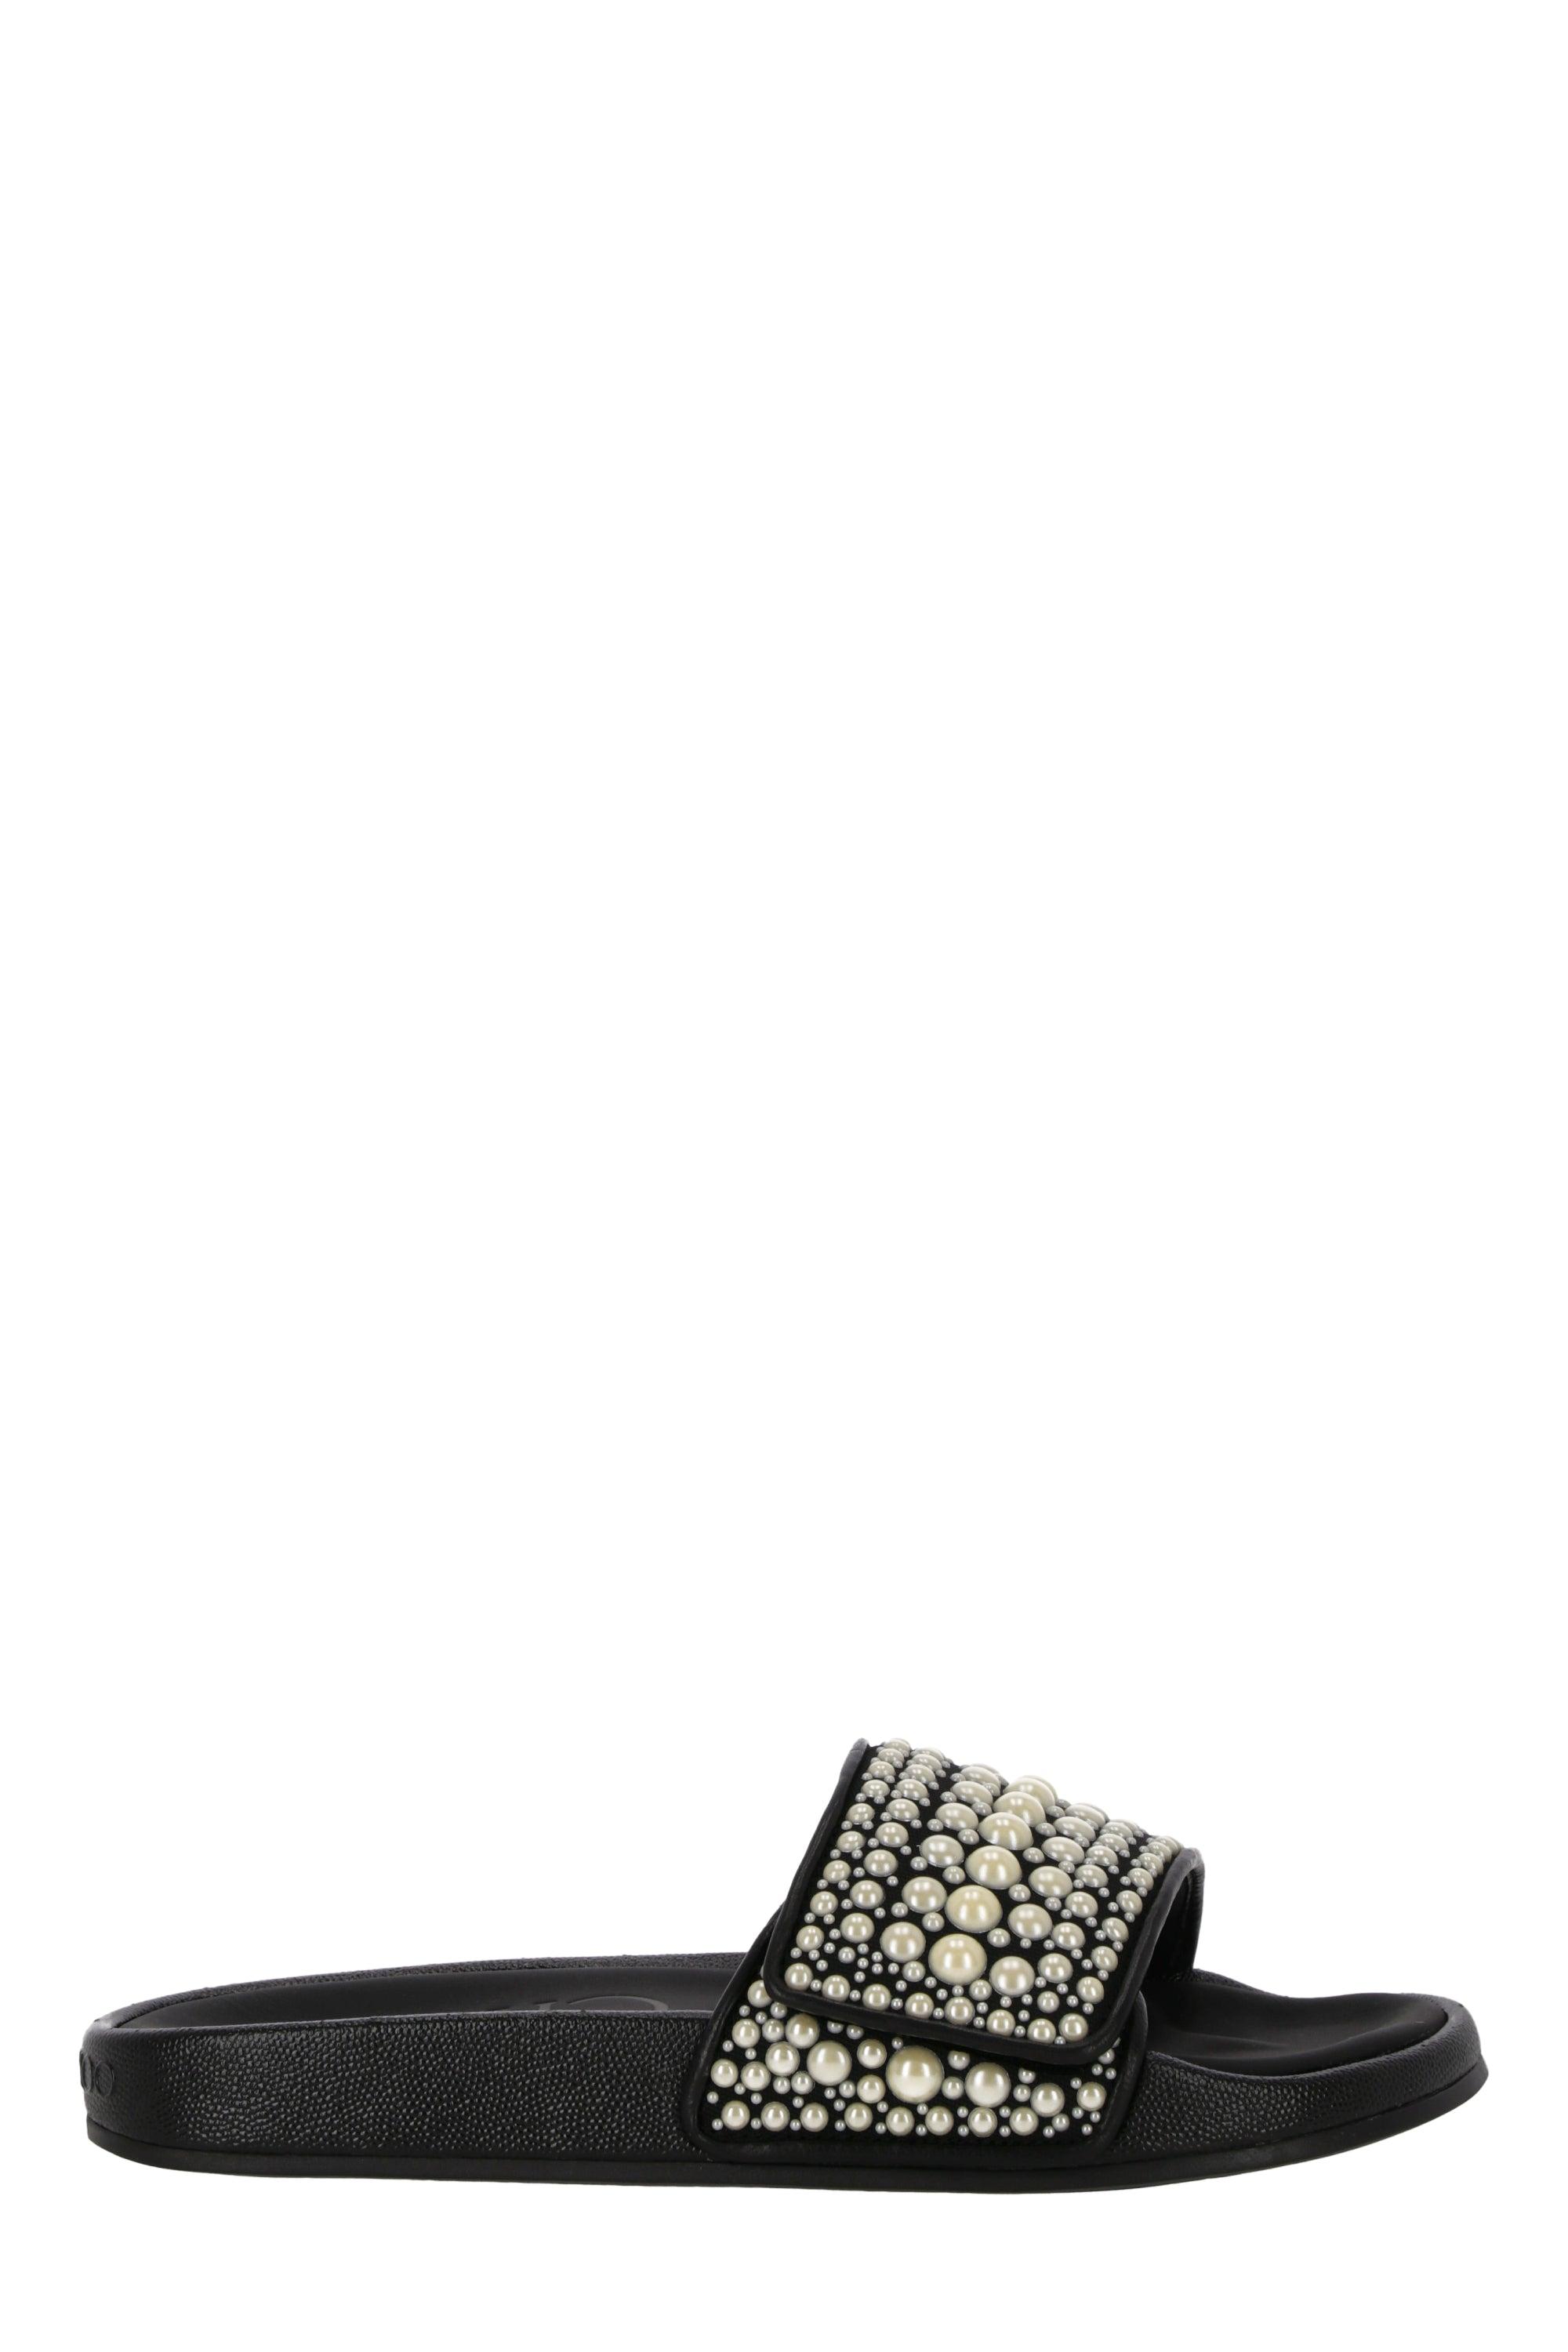 Jimmy Choo Black Leather Fitz Embellished Slides | Lyst